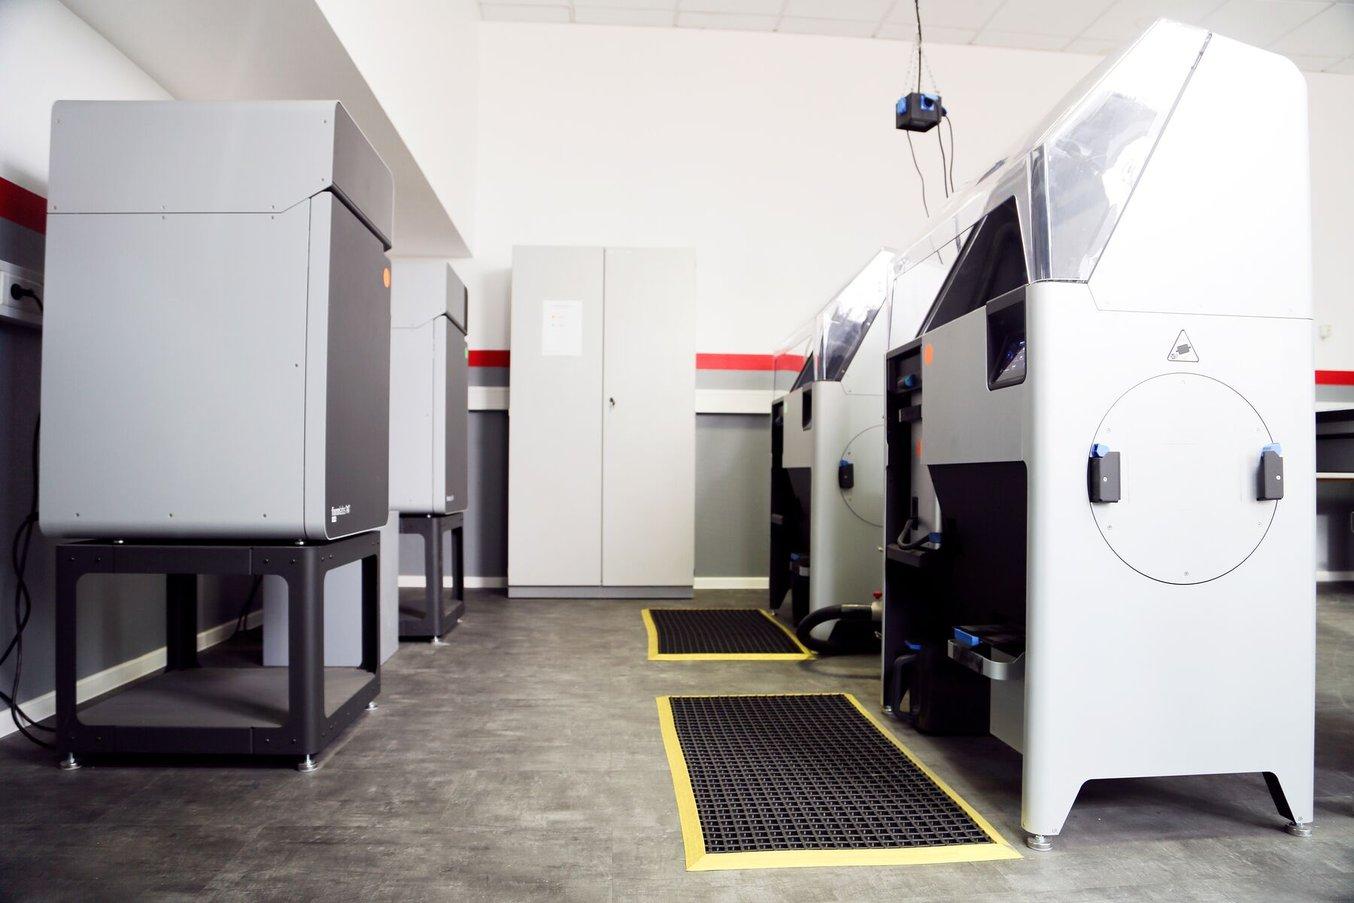 Die 3D-Druck-Werkstatt in Neumünster umfasst zehn verschiedene 3D-Drucker, einschließlich zwei SLS-Drucker der Fuse-Serie.